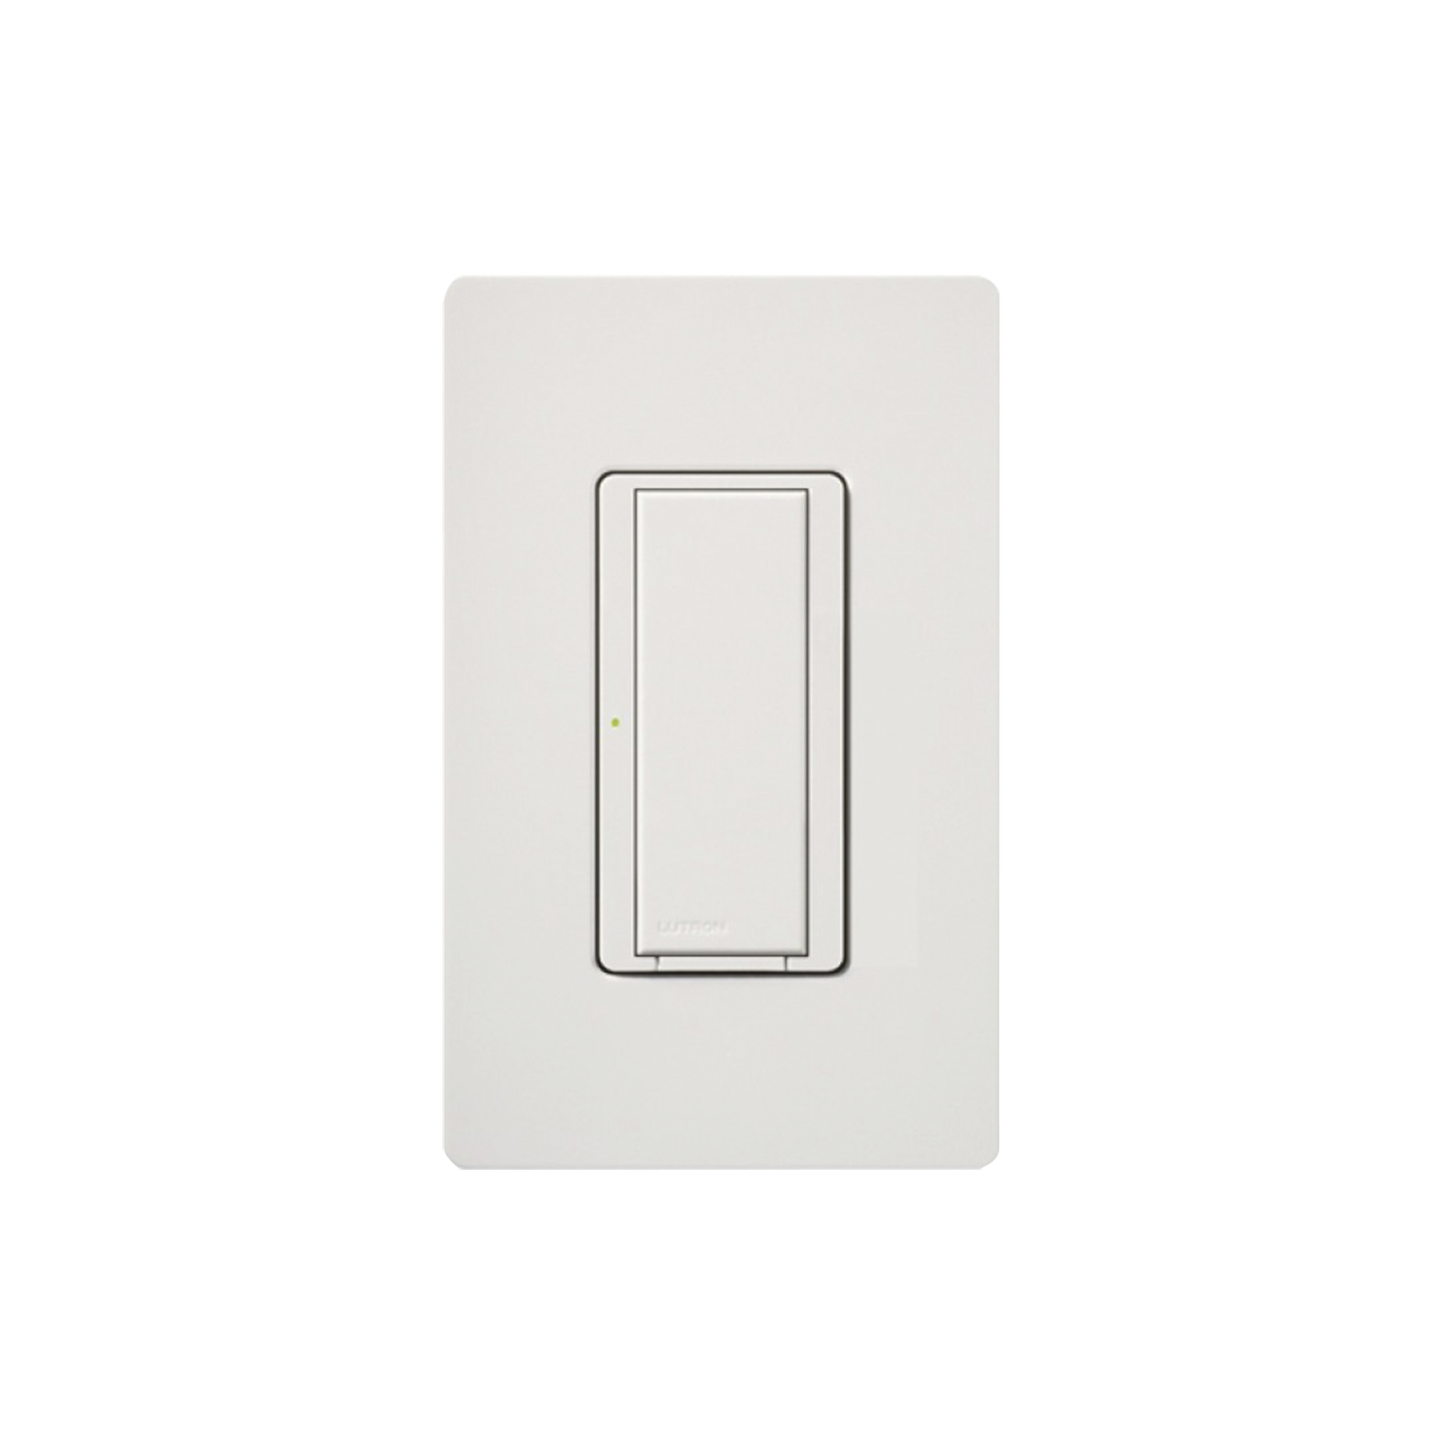 Switch on/off interruptor inalámbrico señal ClearConnect para iluminación de 6 A, ventilador de 1/10 HP, 120 V, requiere cable neutro.